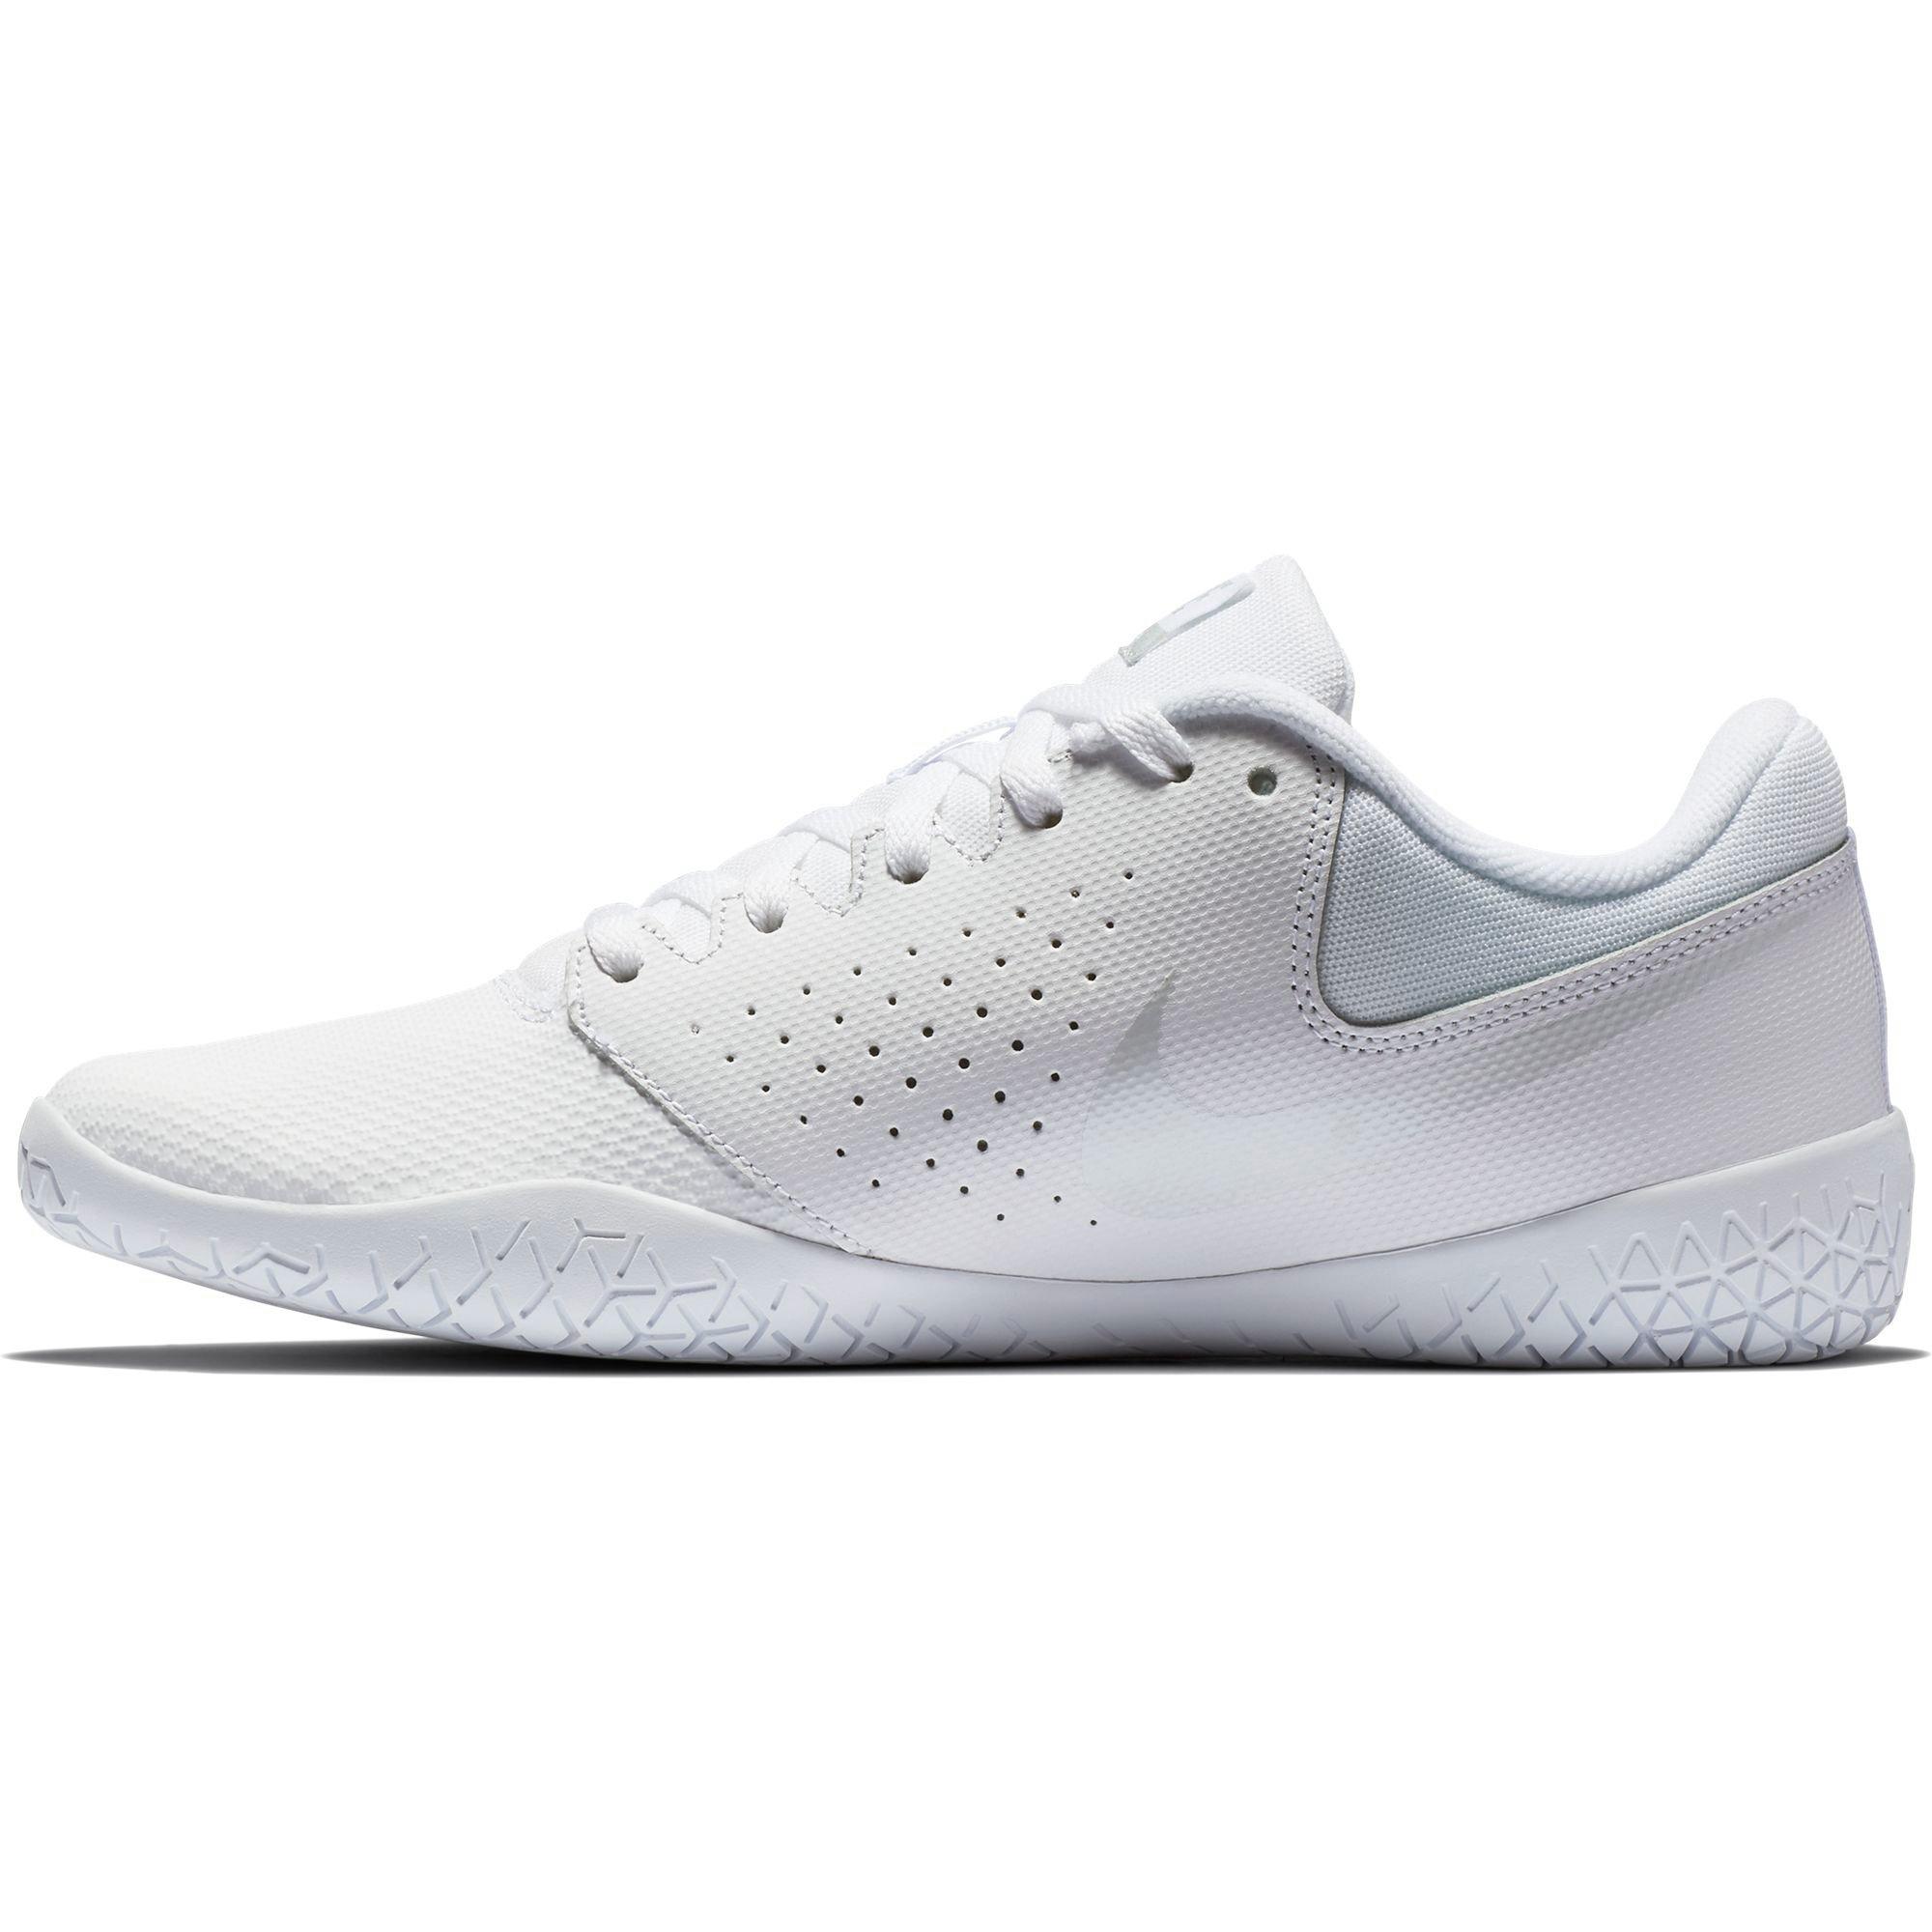 Nike Sideline IV "Platinum White" Women's Shoe